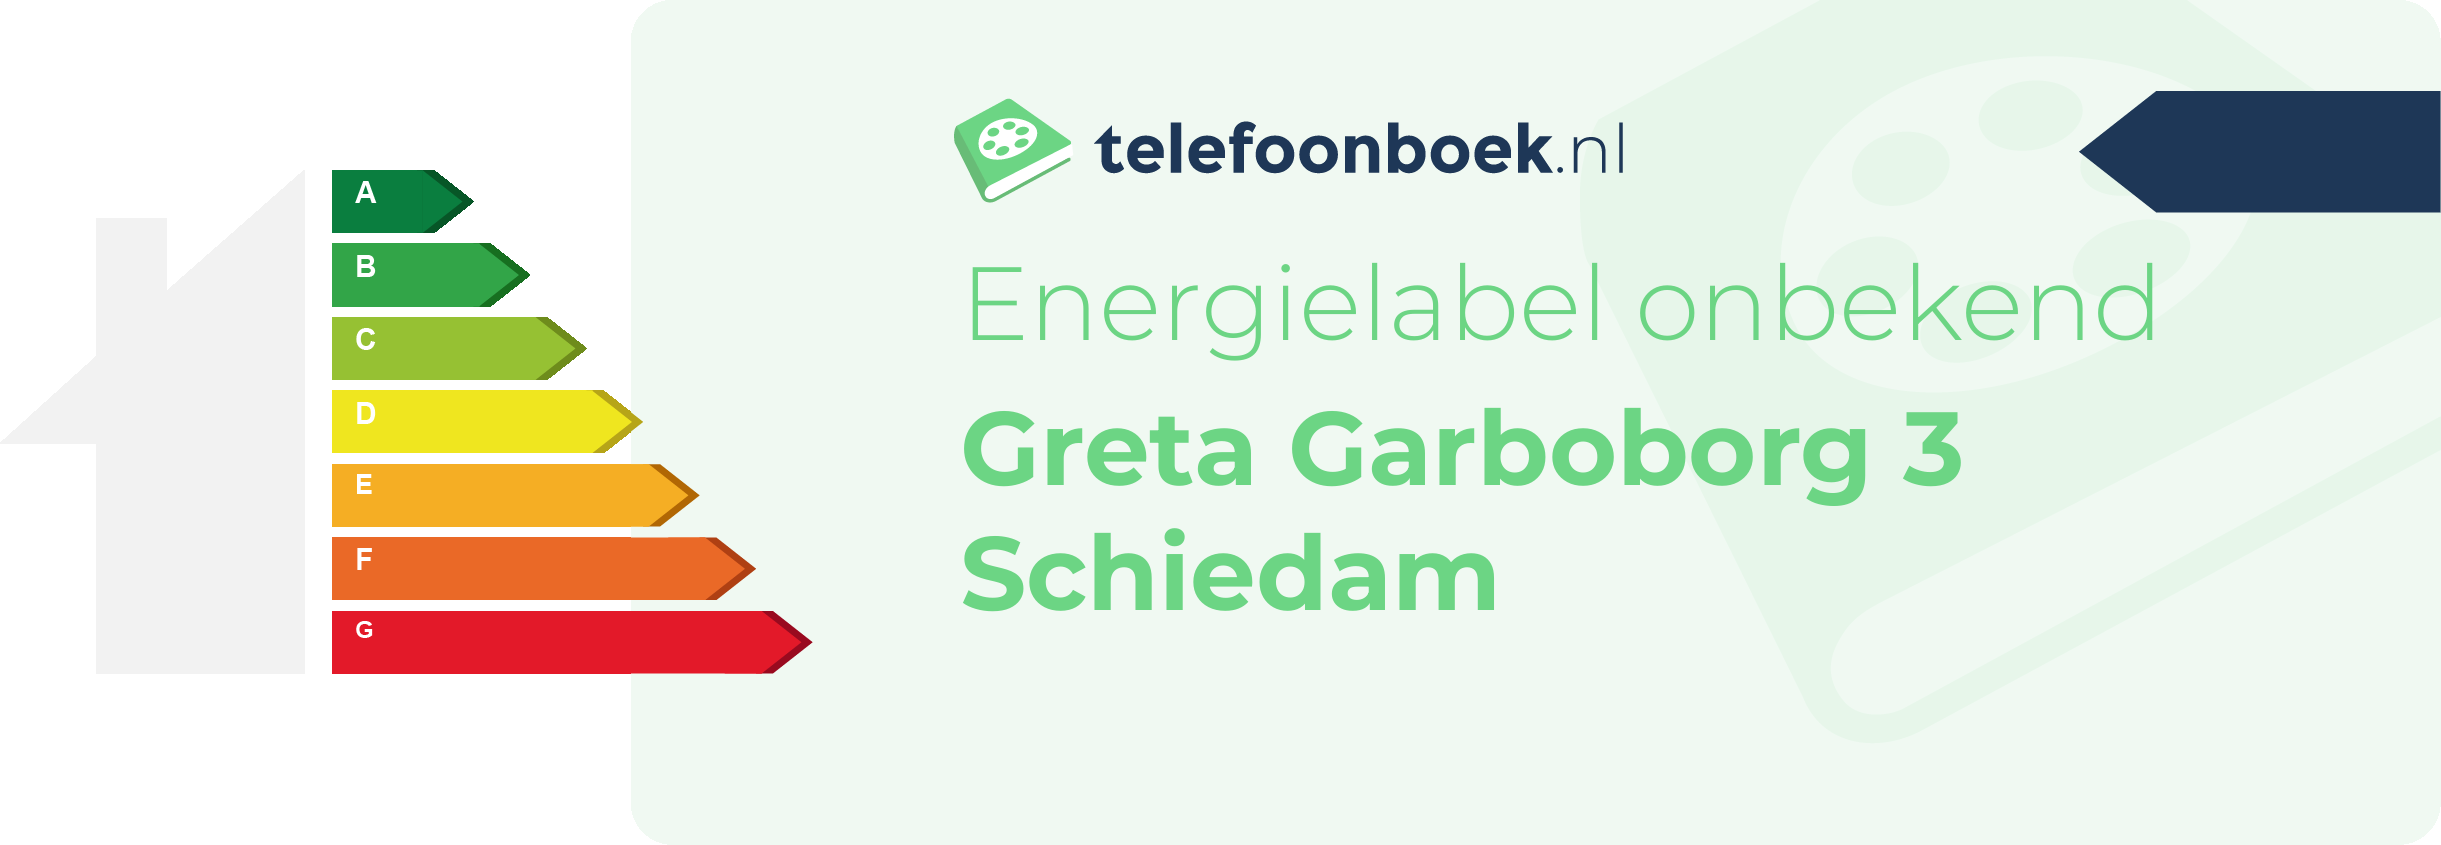 Energielabel Greta Garboborg 3 Schiedam